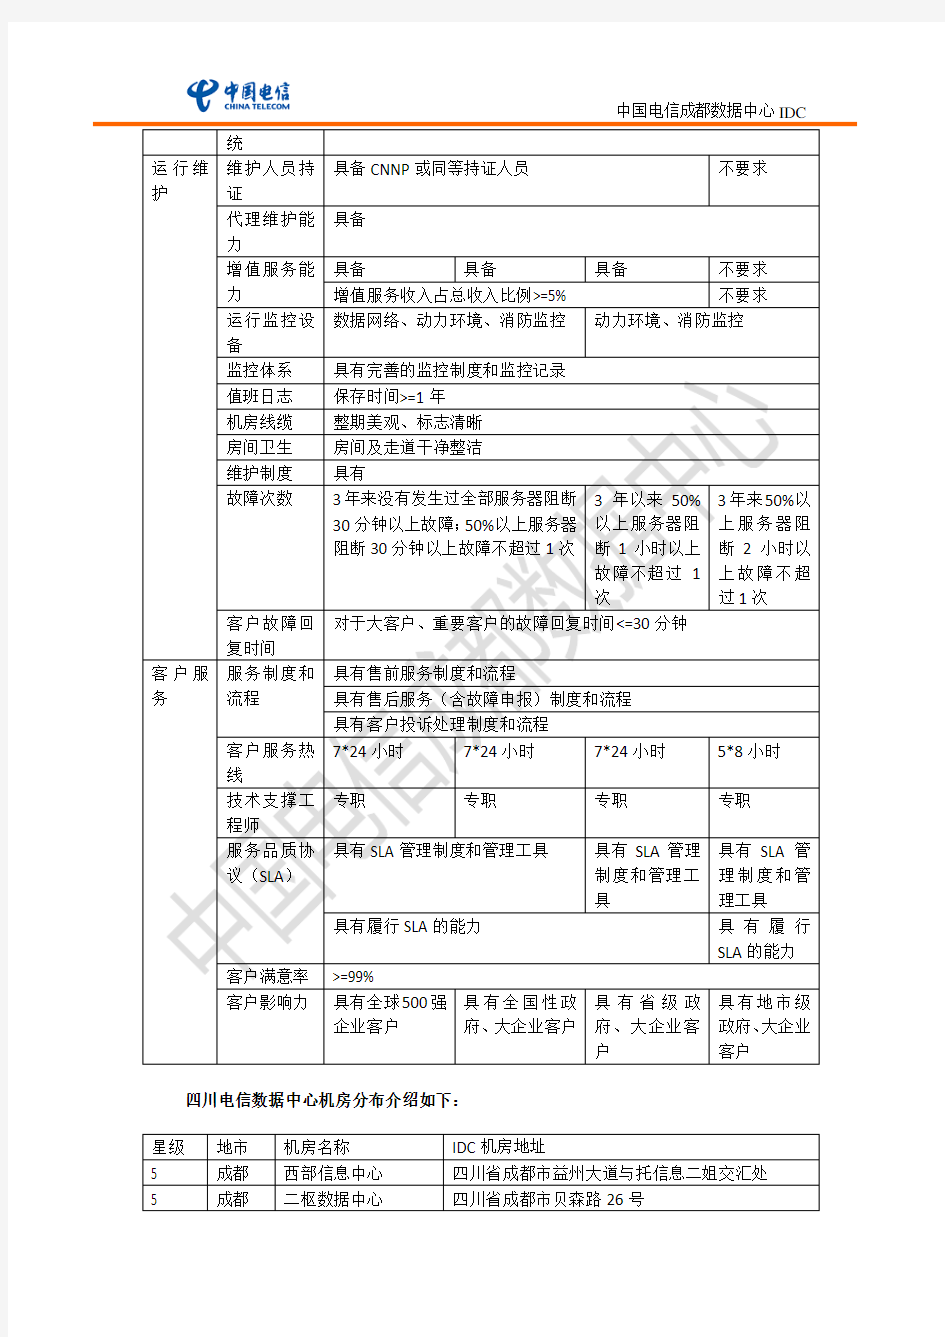 中国电信星级机房划分标准